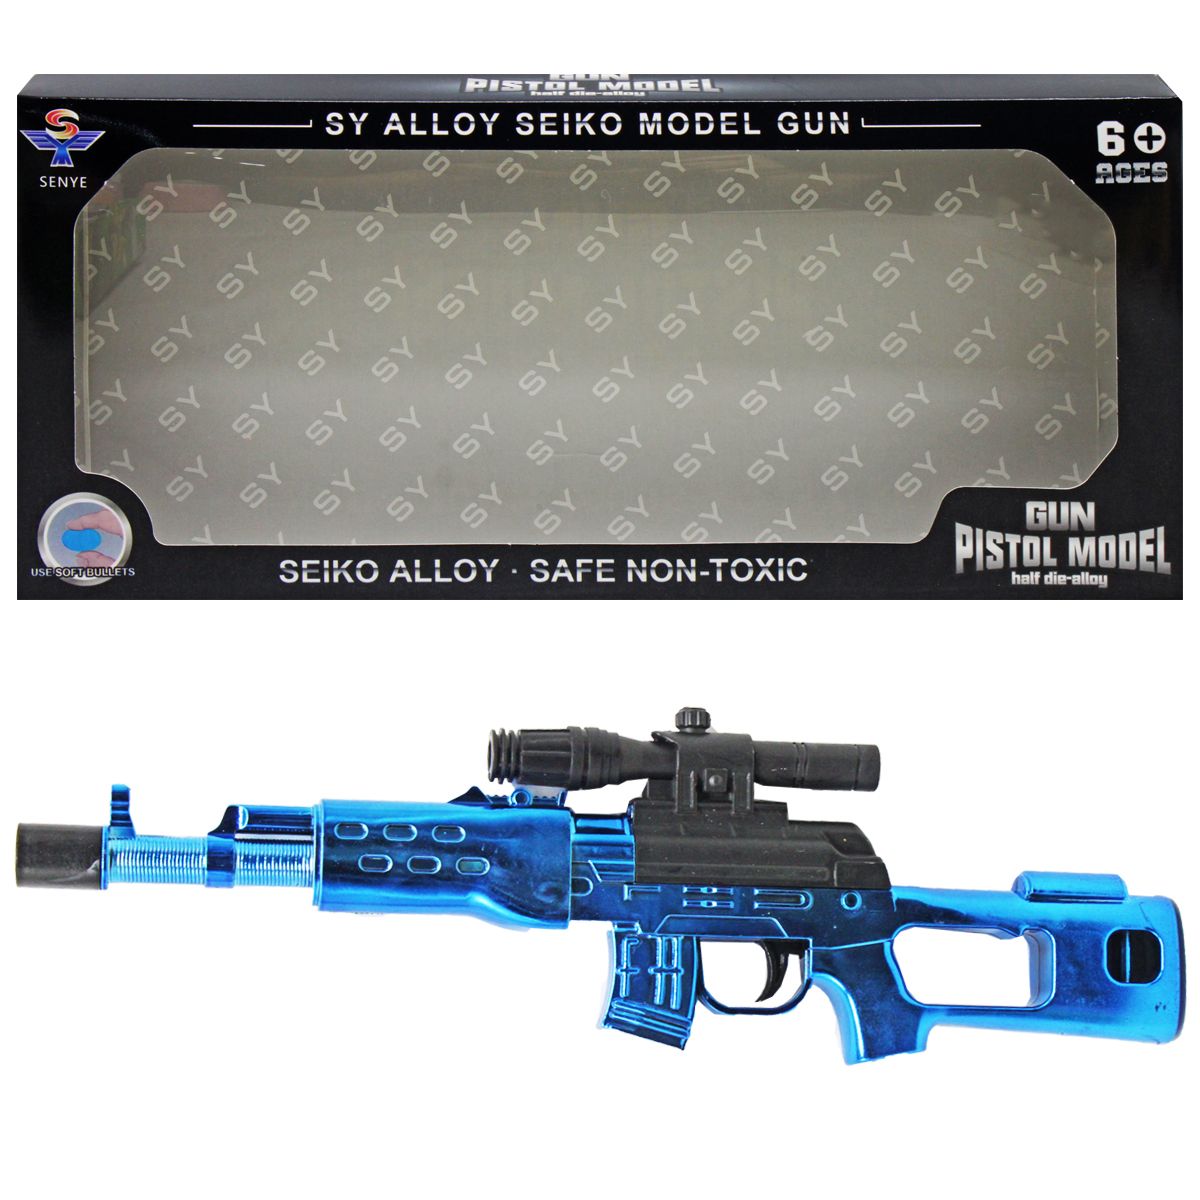 Автомат "Gun pistol model" (синий)